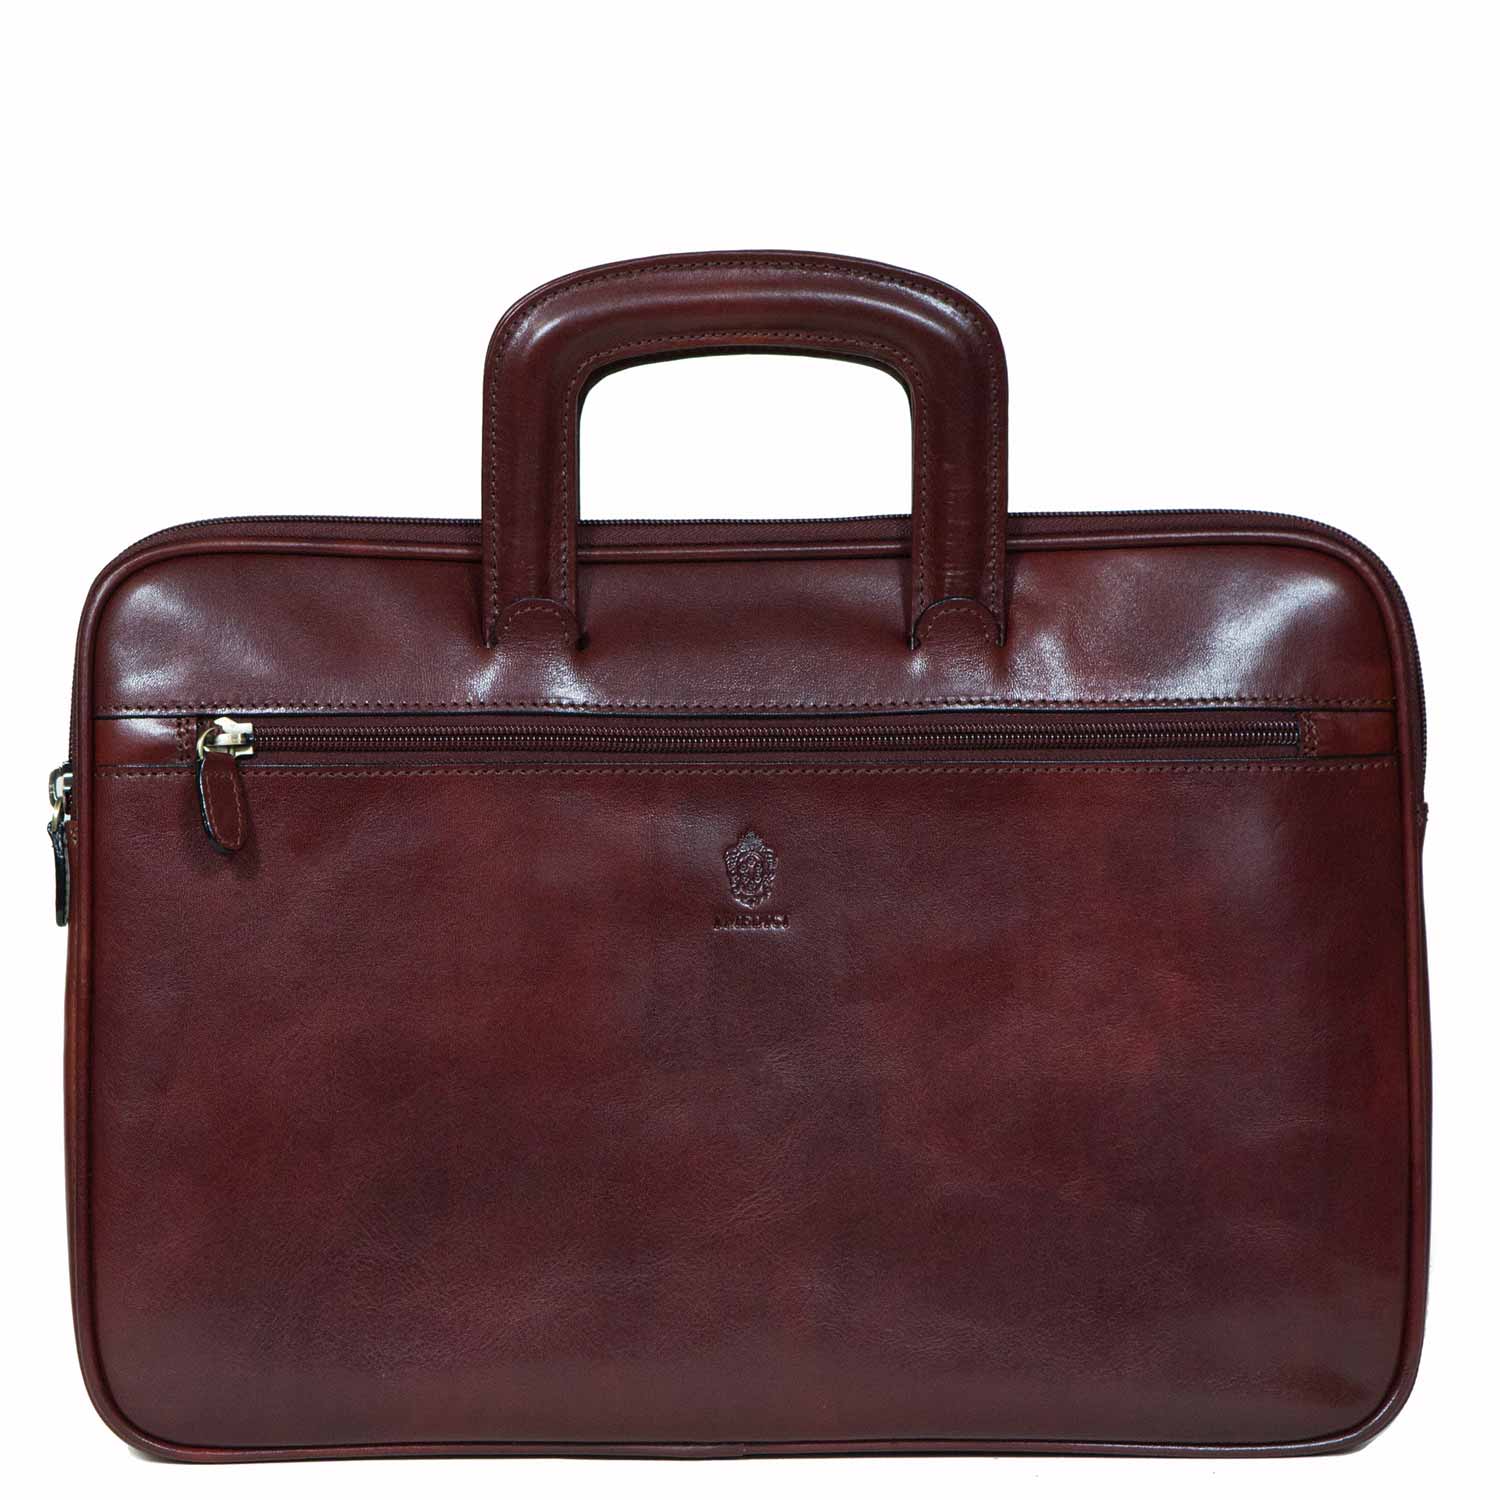 De Martino classic 1 compartment buffalo leather briefcase